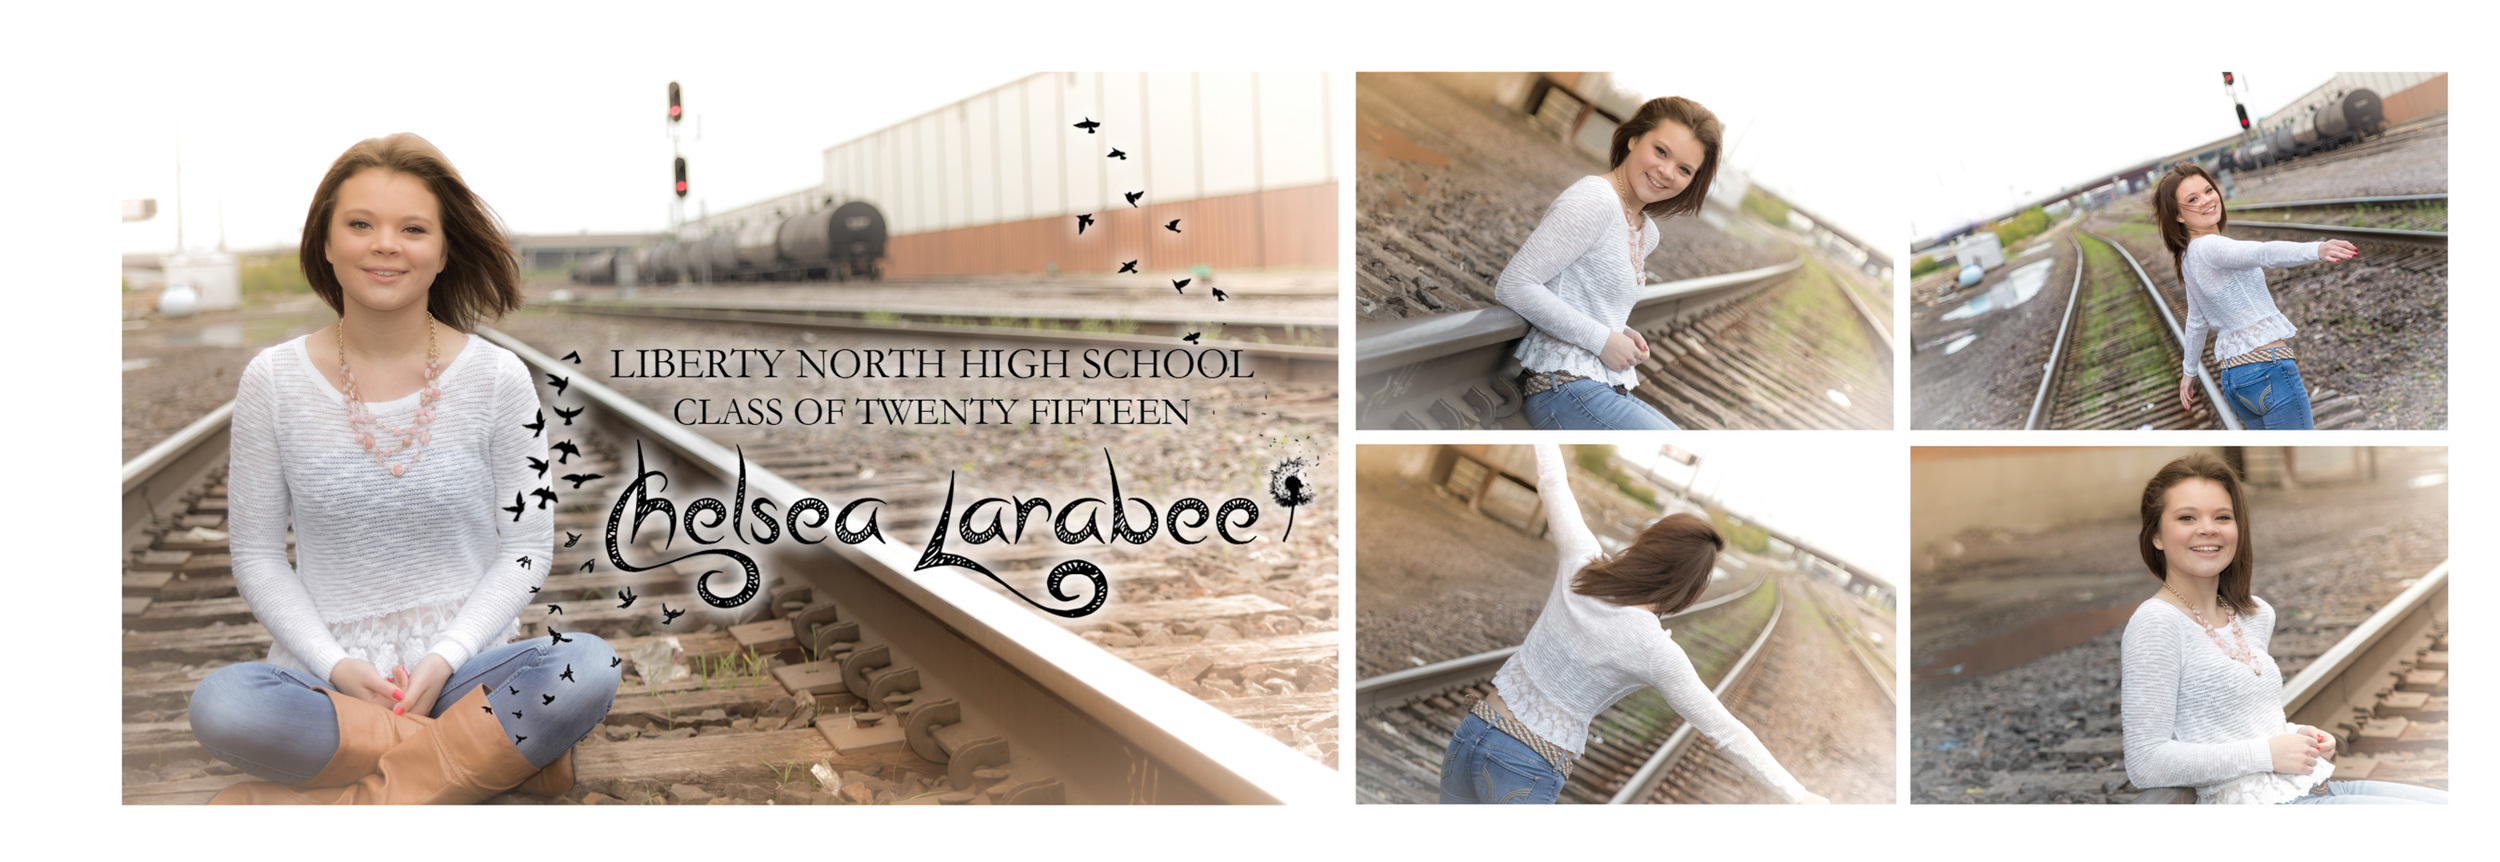 Chelsea Larabee Senior CatsEye Photography 2015 Banner 3.jpg